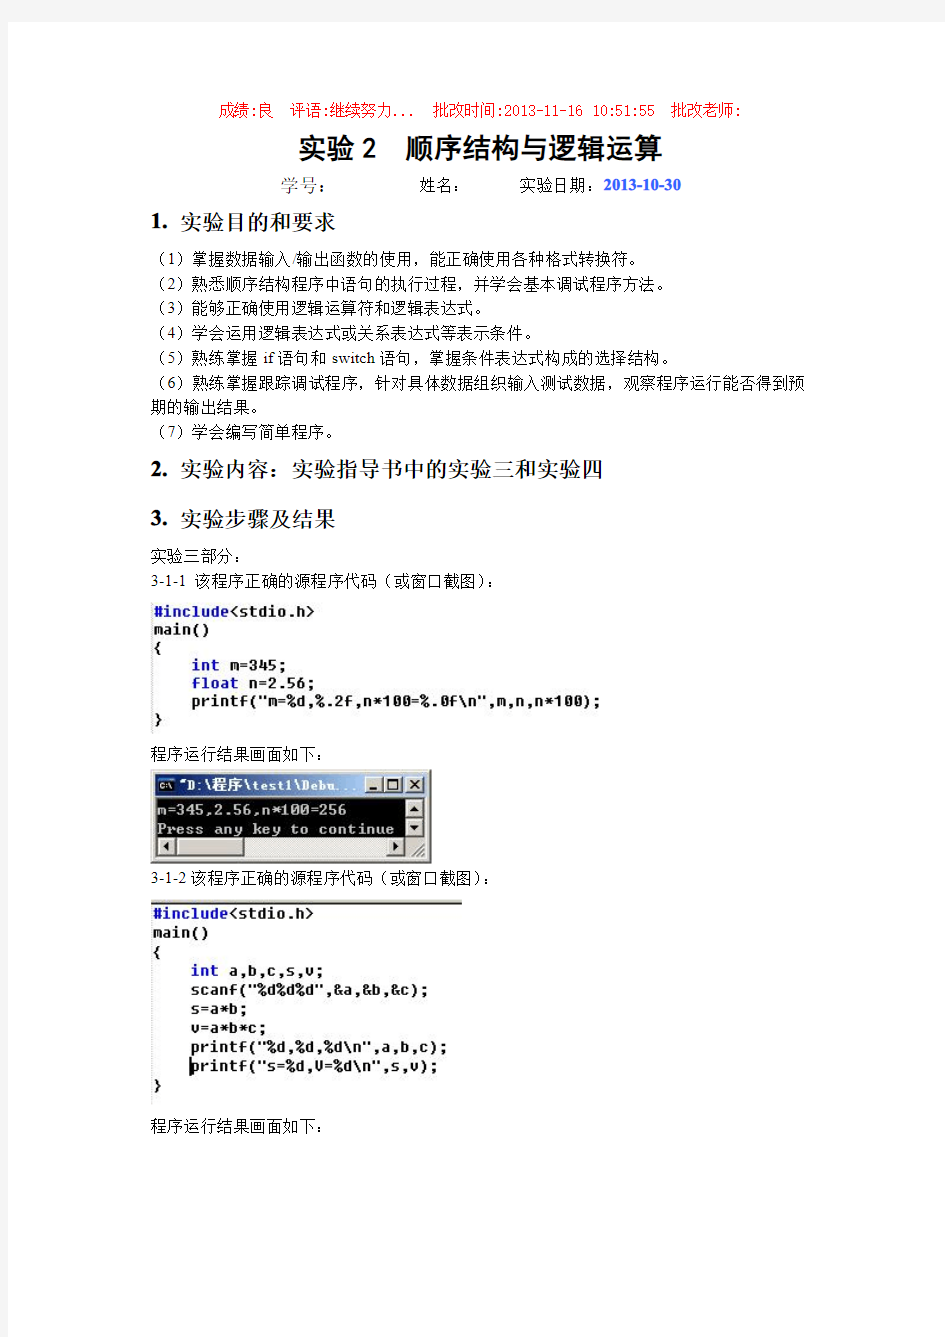 桂林电子科技大学 C语言 程序设计 习题 答案(周信东) 实验2  顺序结构与逻辑运算